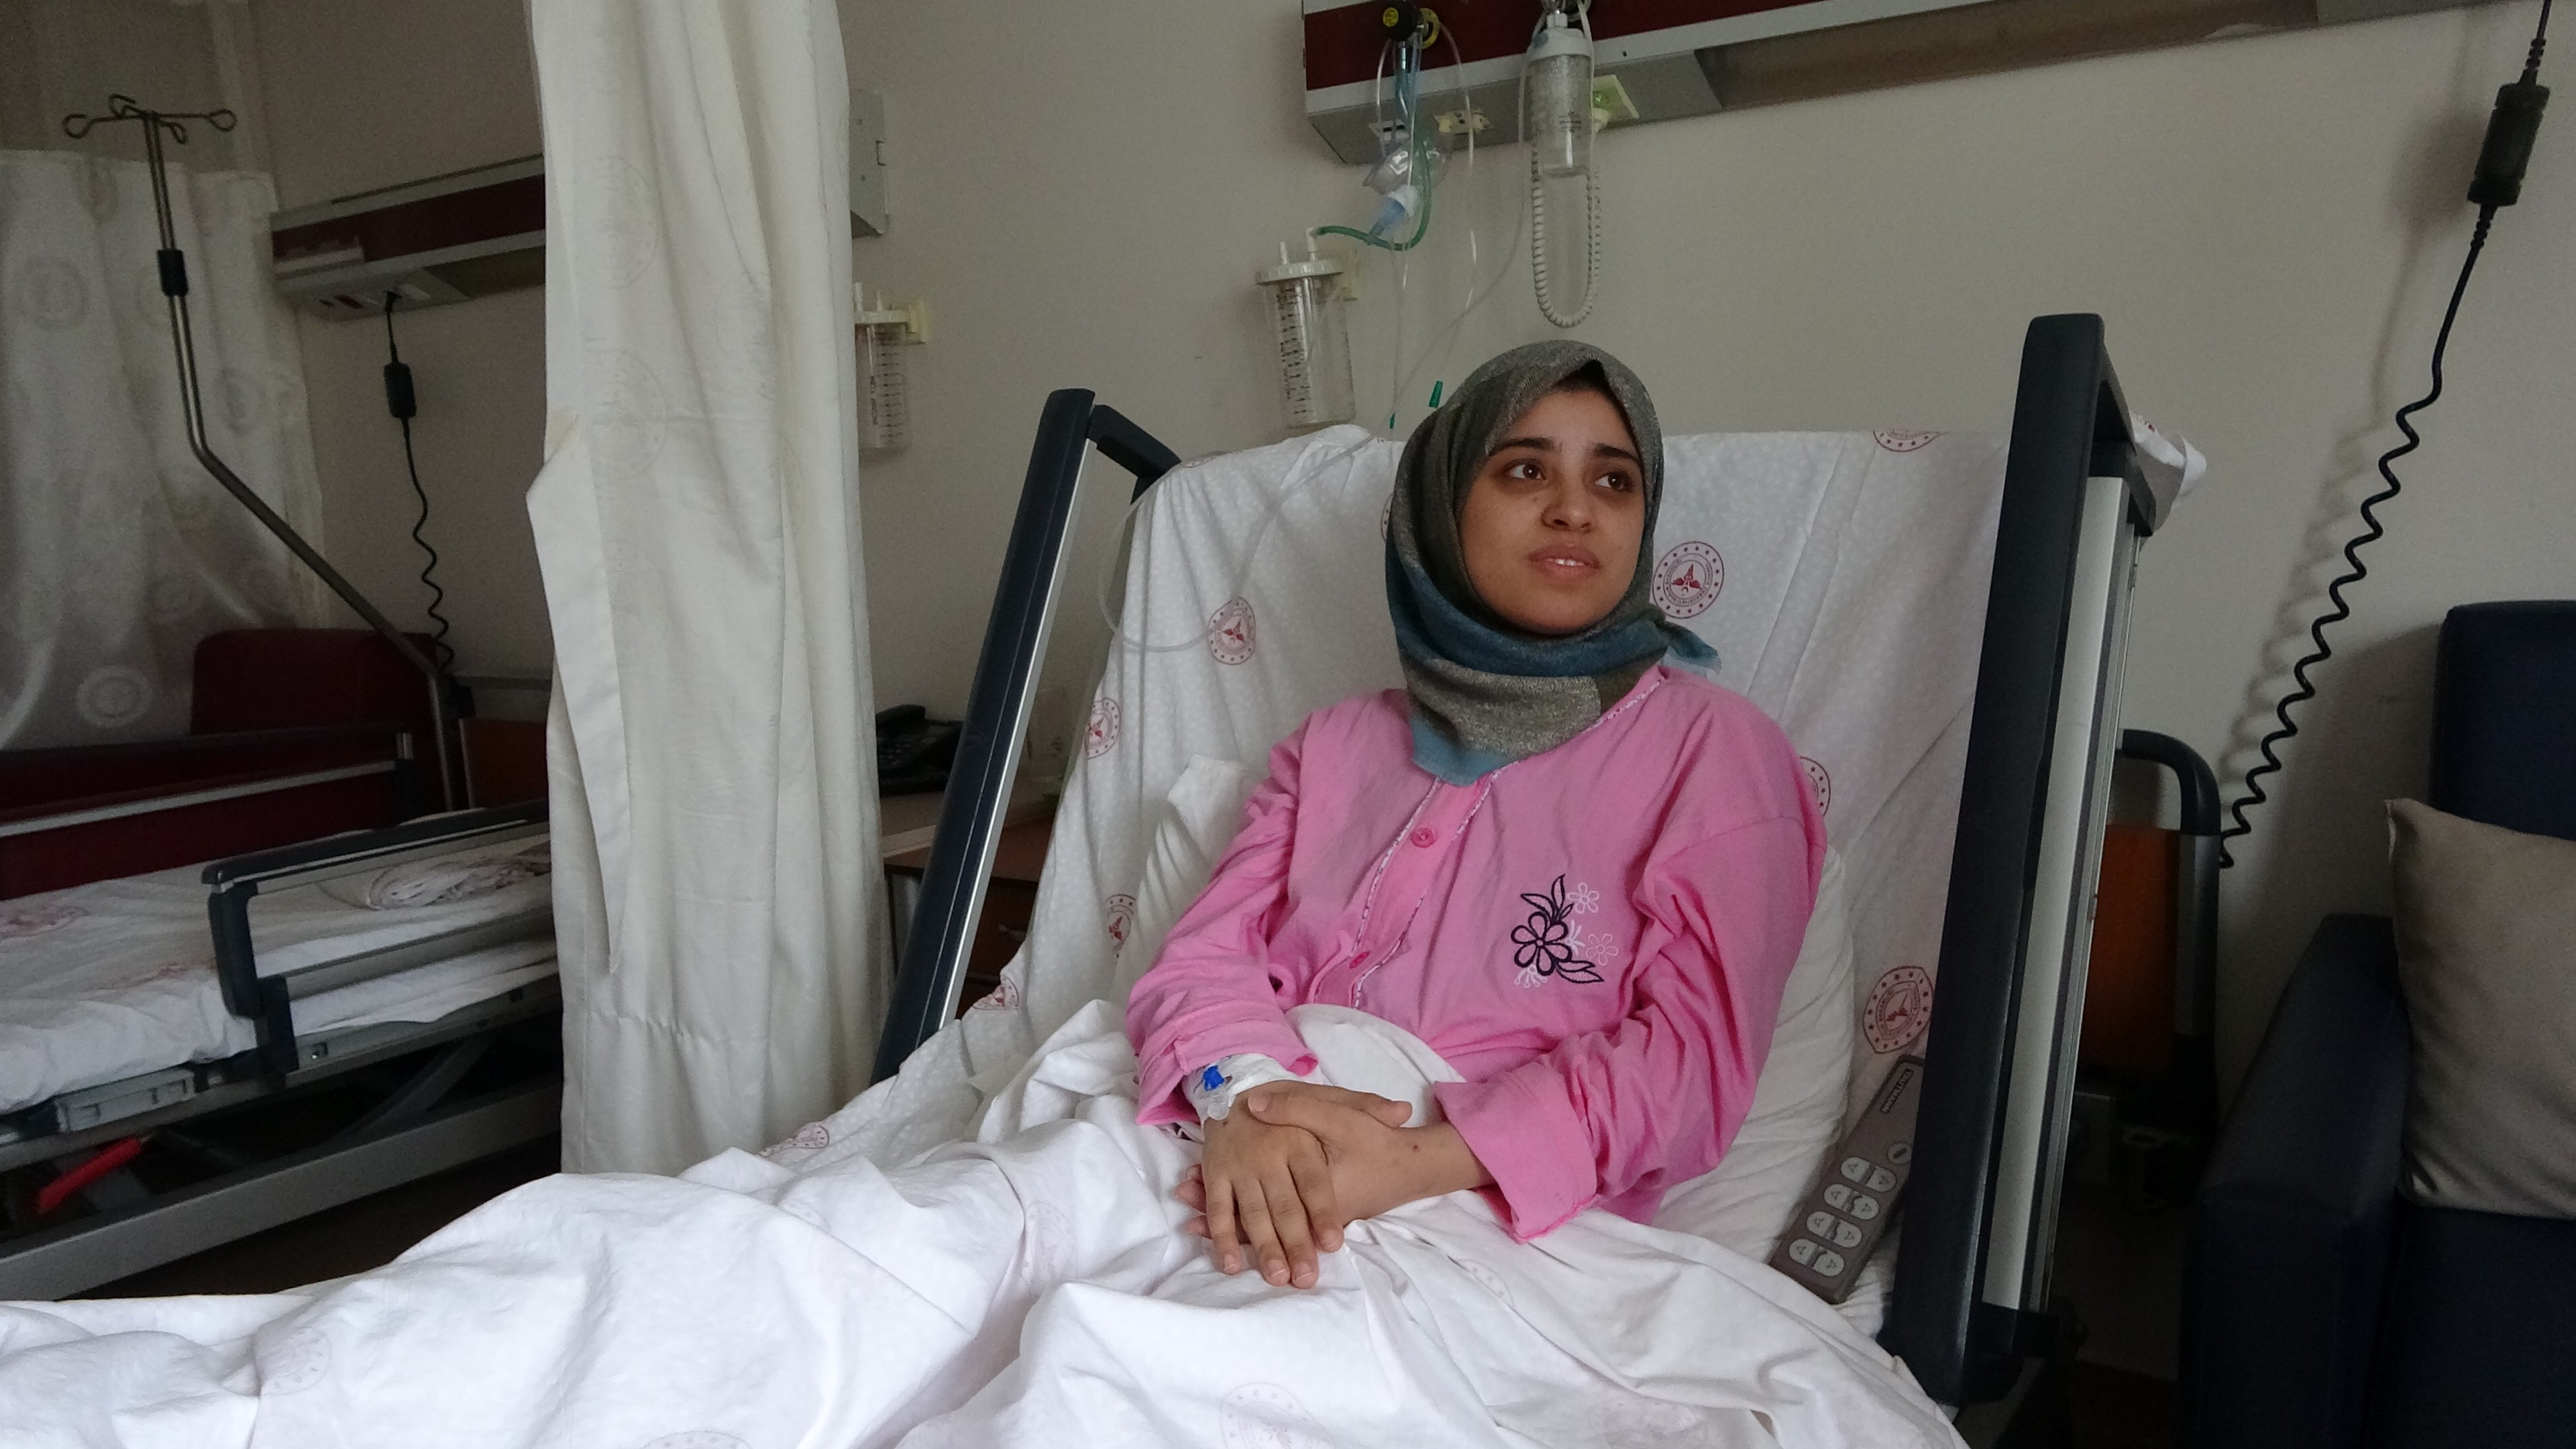 Trabzon'da tedavi gören depremzede kadın bebeğini nasıl hayatta tuttuğunu anlattı